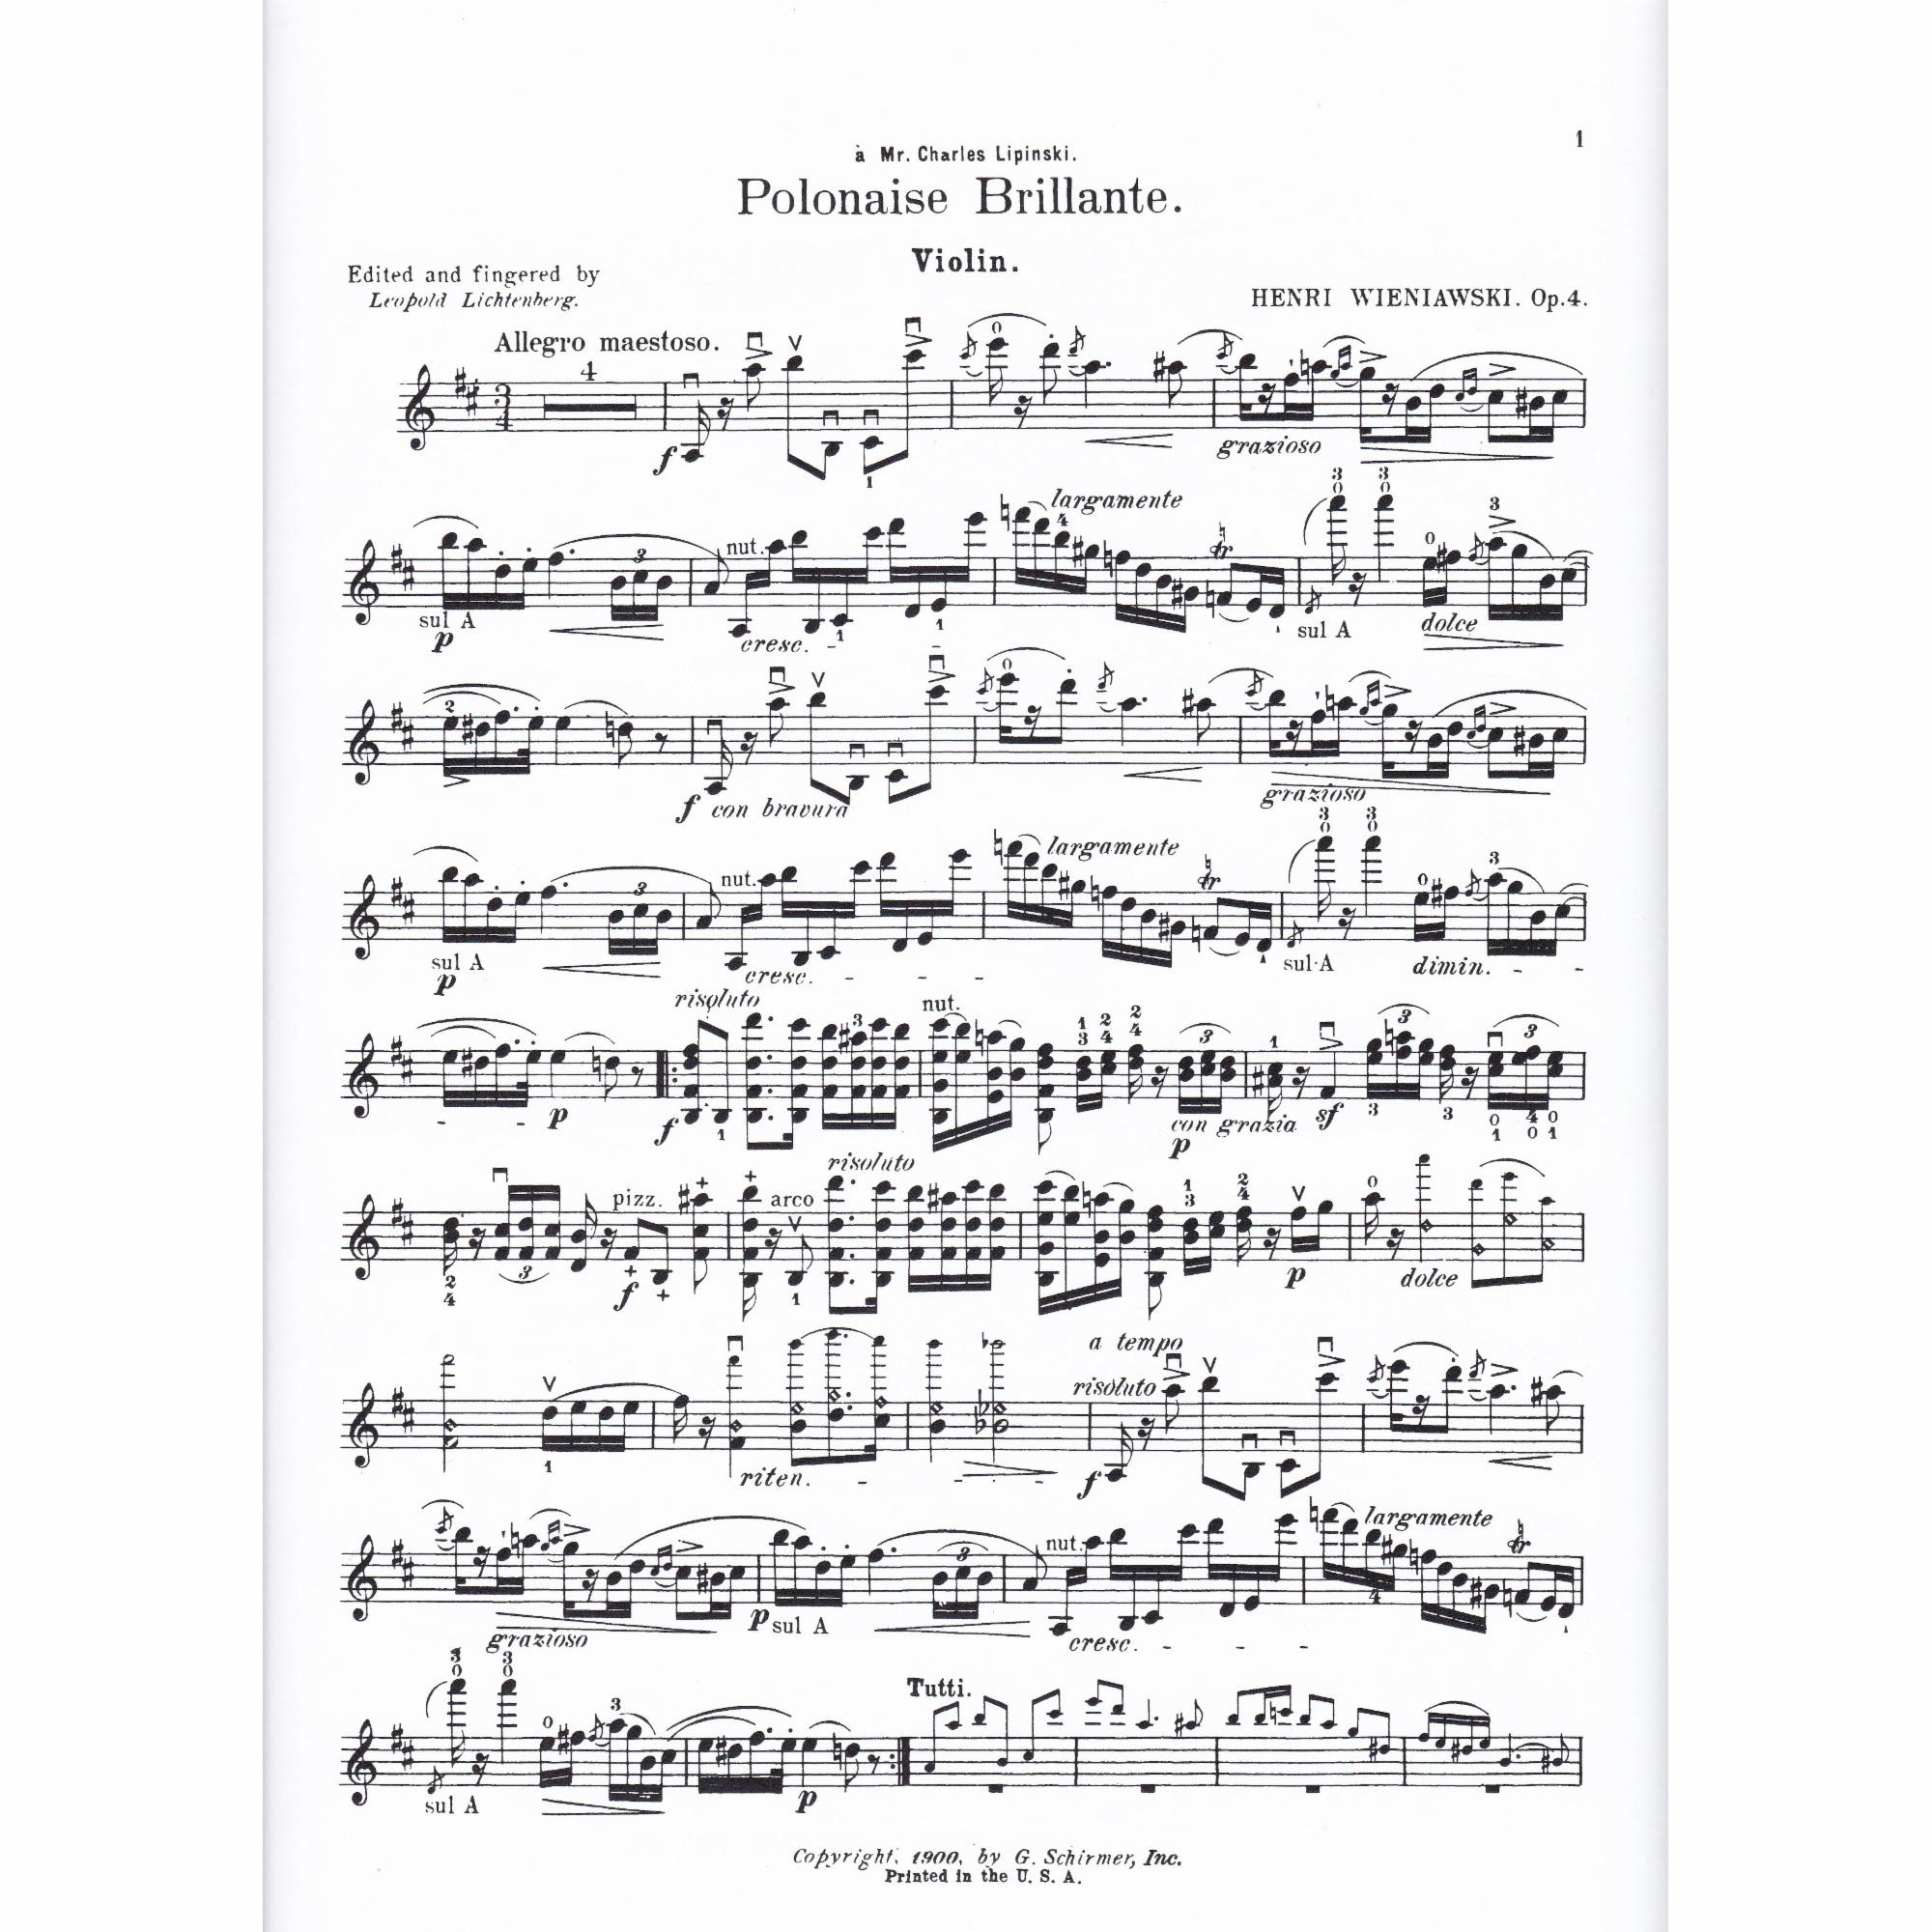 Polonaise Brillante No. 1 in D Major, Op. 4